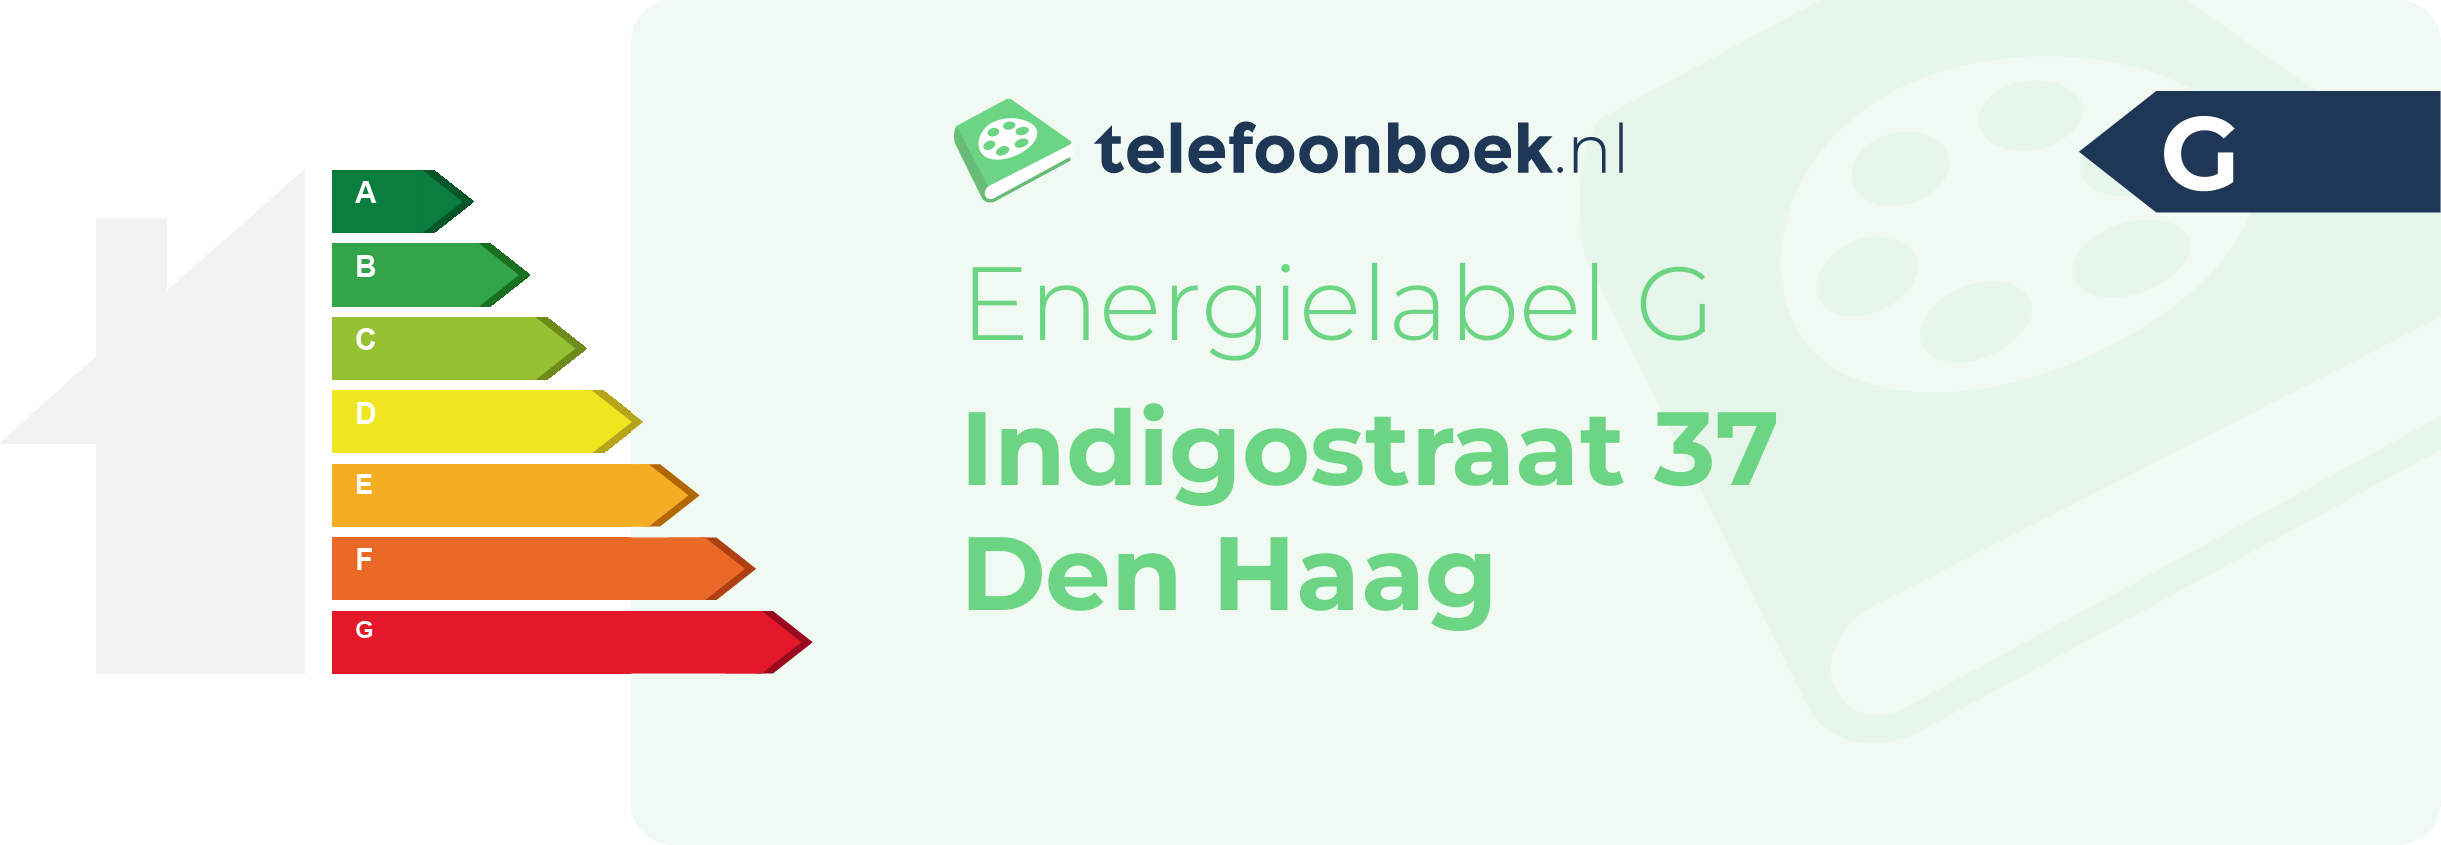 Energielabel Indigostraat 37 Den Haag